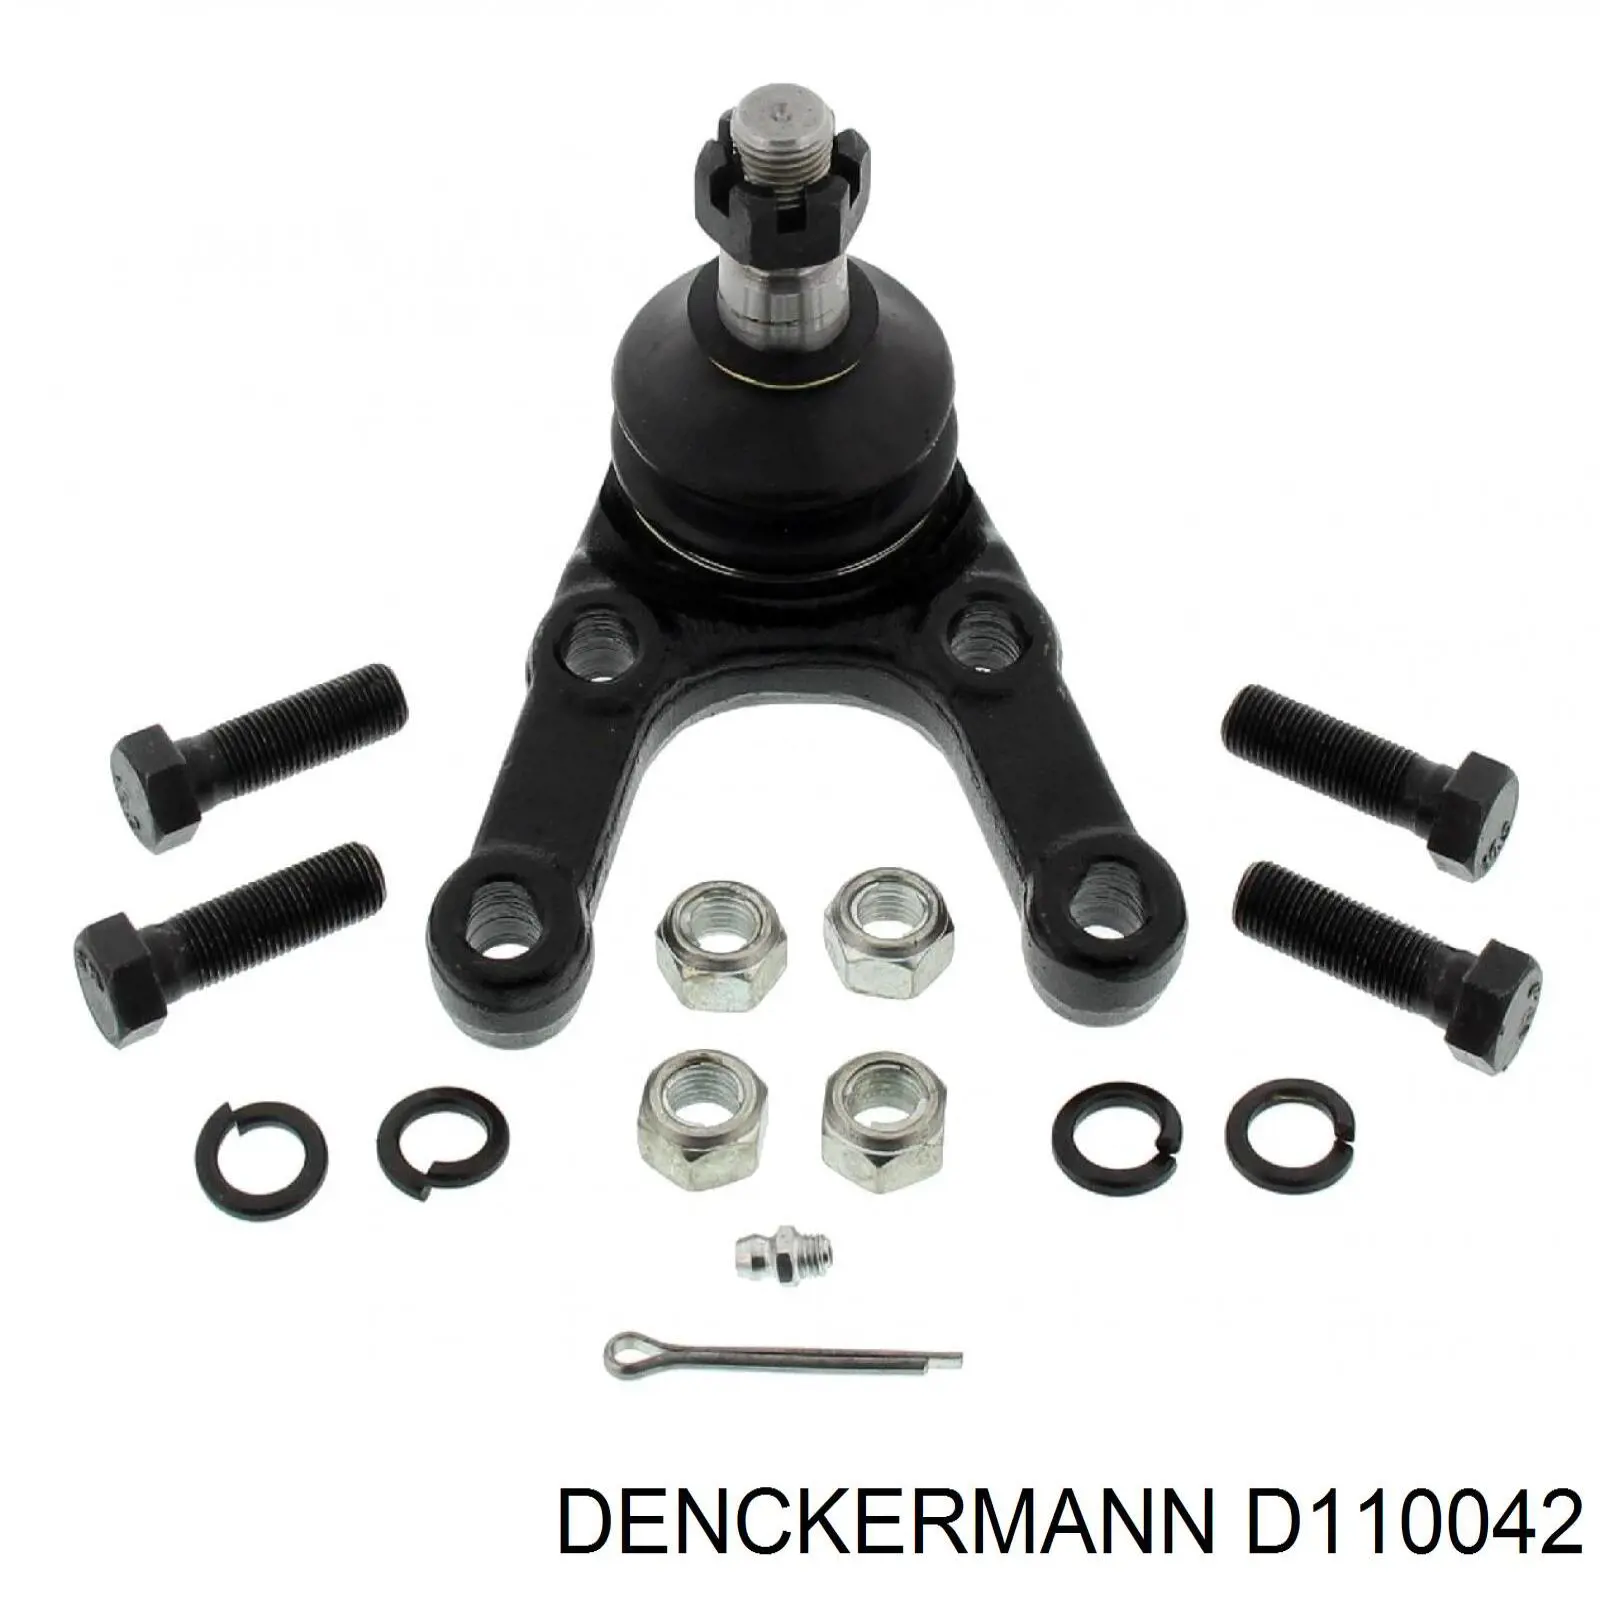 D110042 Denckermann rótula de suspensión inferior